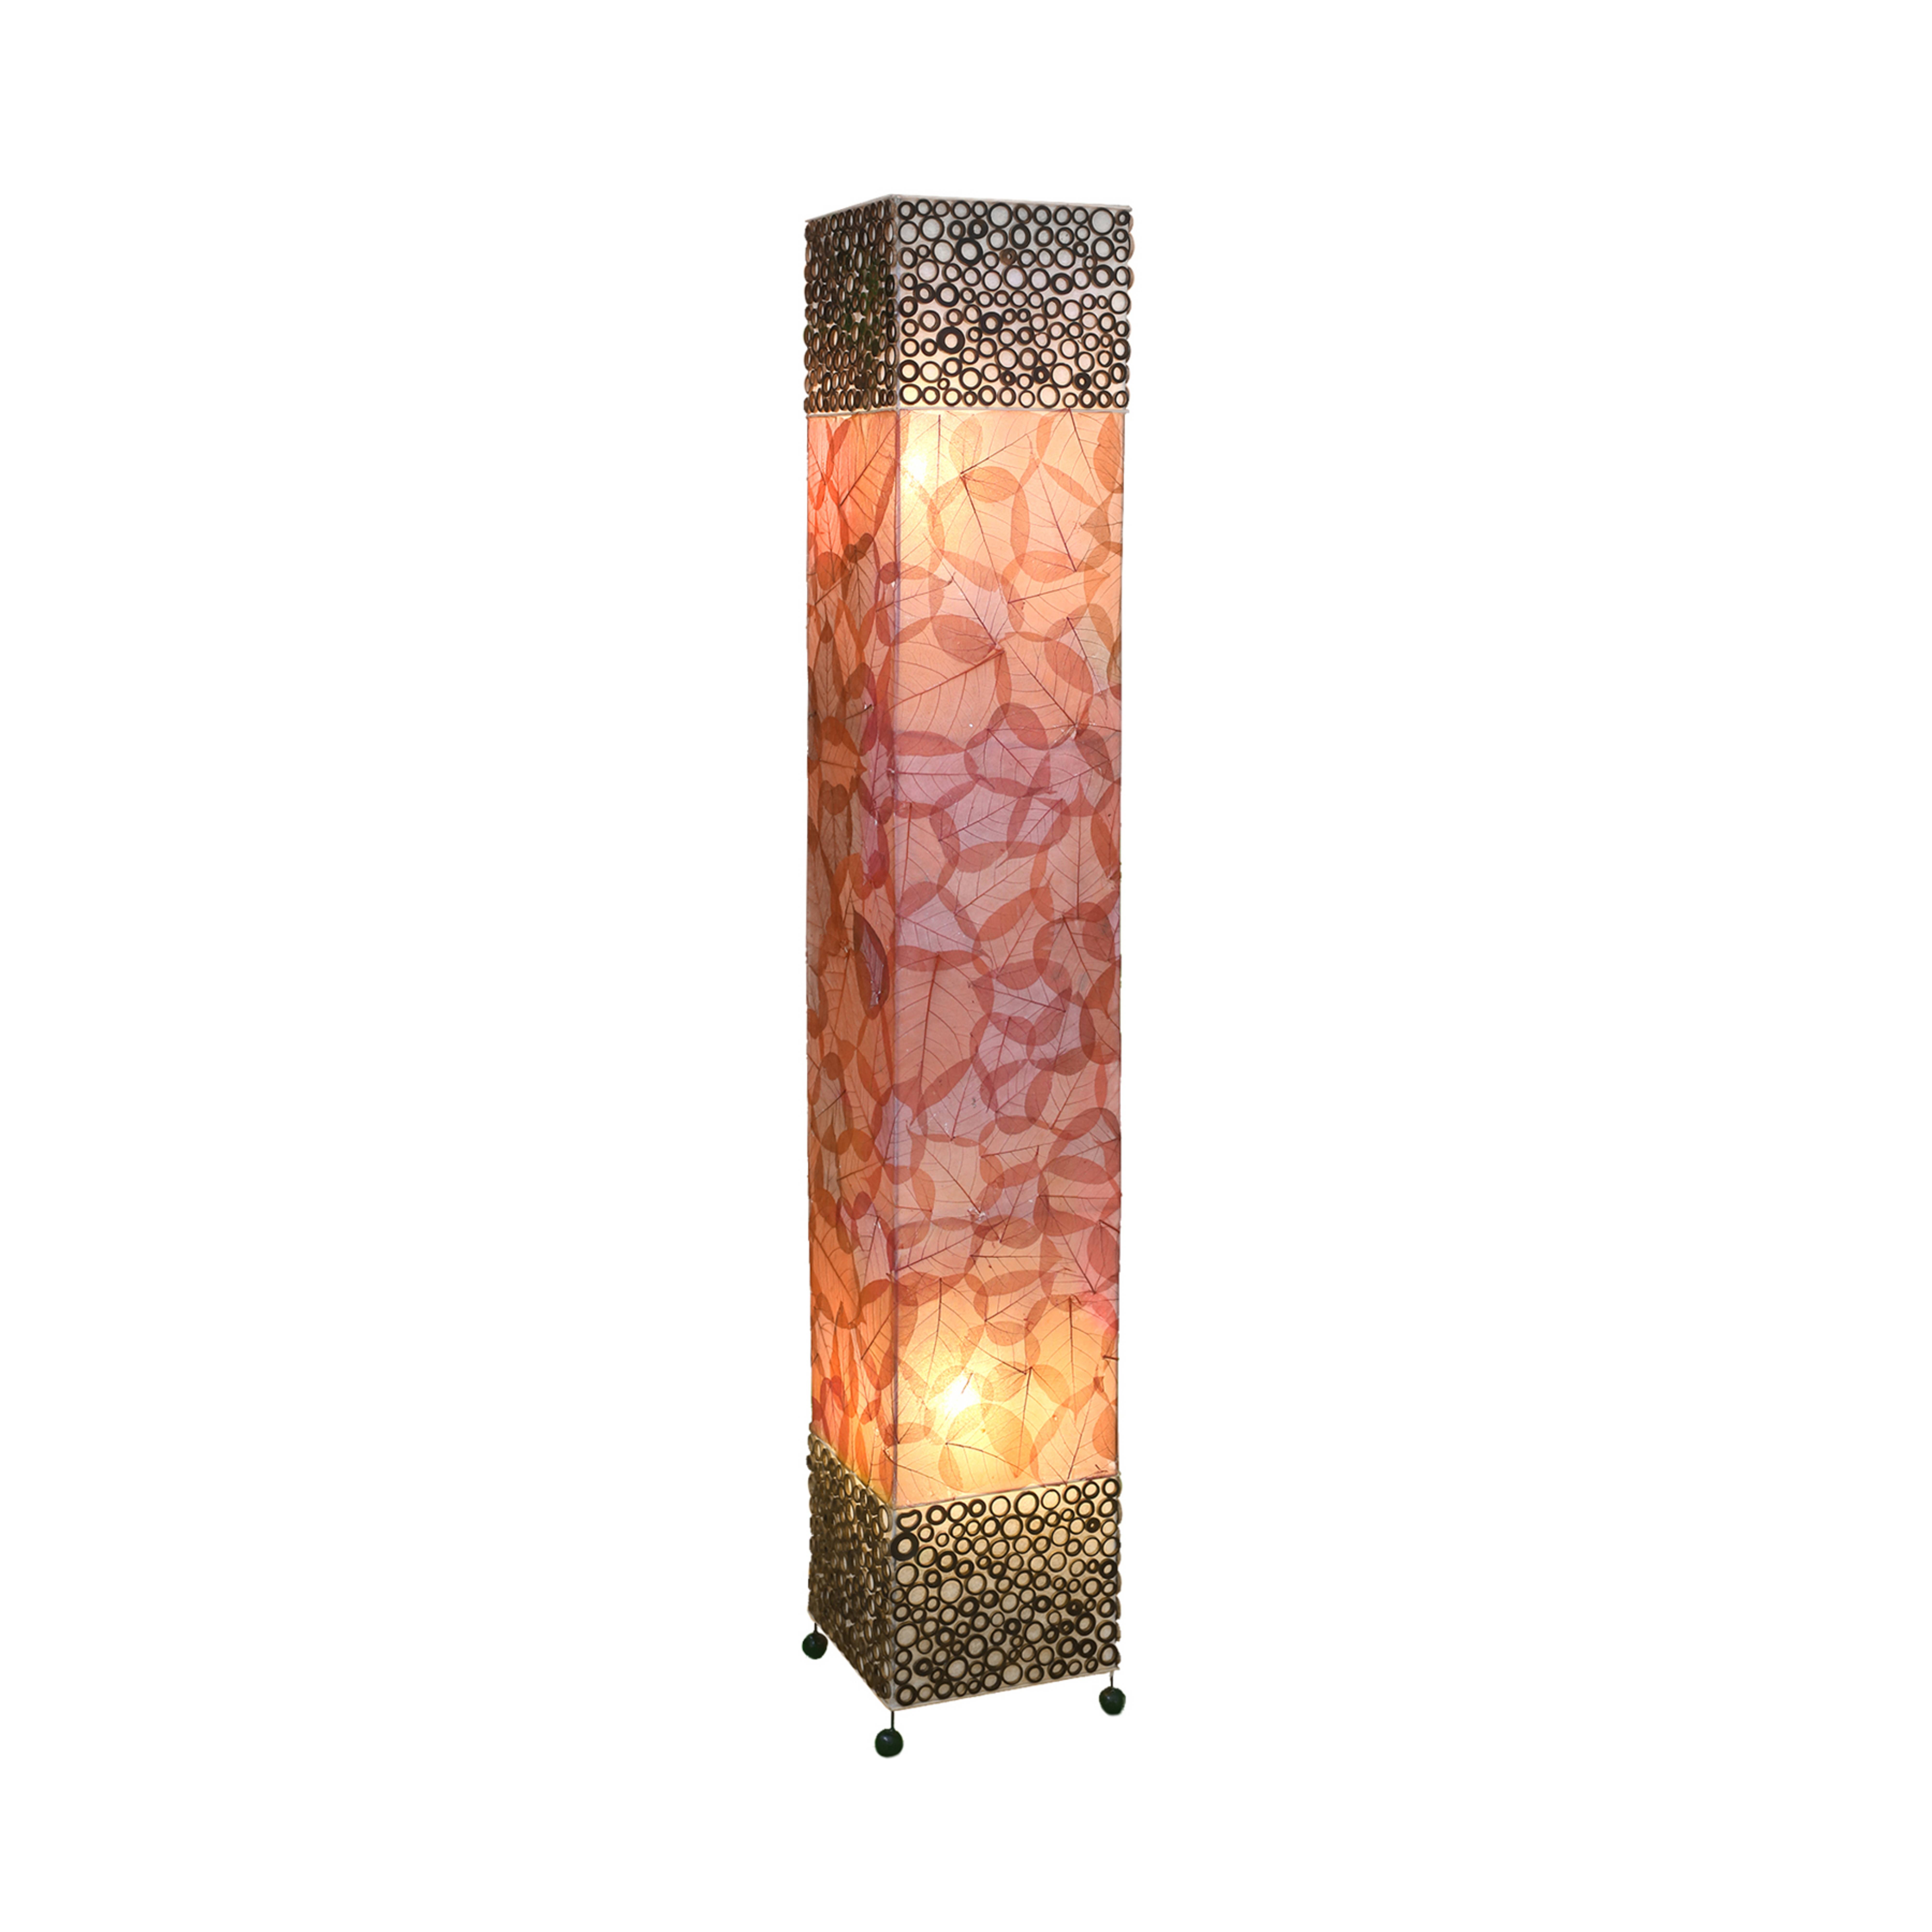 Lampe sur pied Emilian avec motif de feuilles, hauteur 150 cm